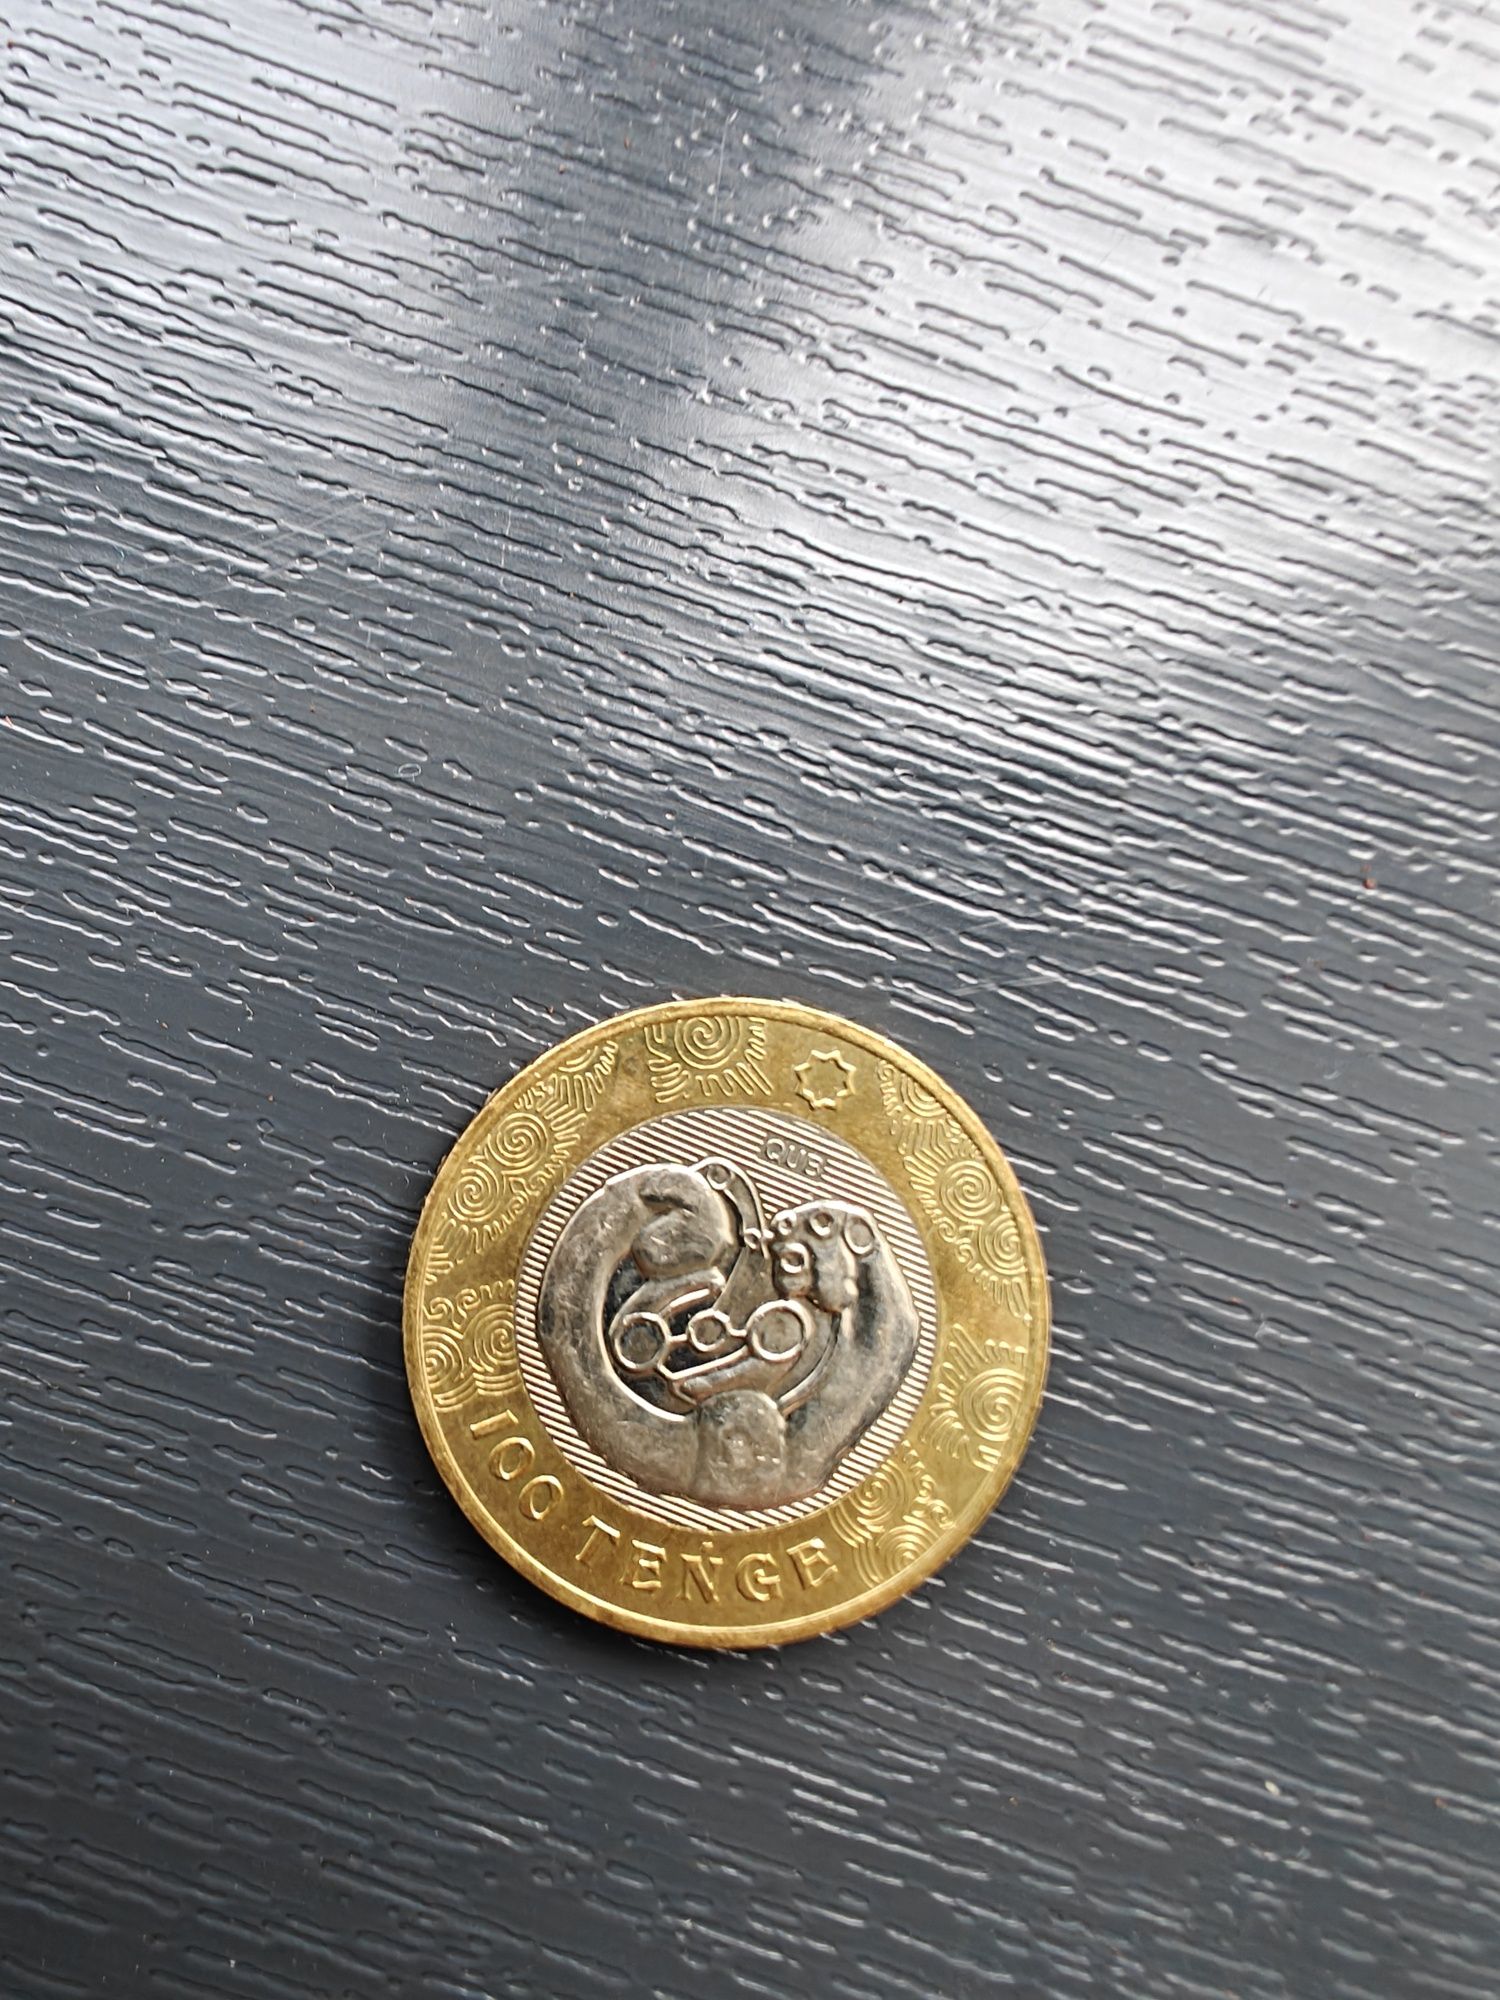 Обмен монеты с номиналом 100 тенге